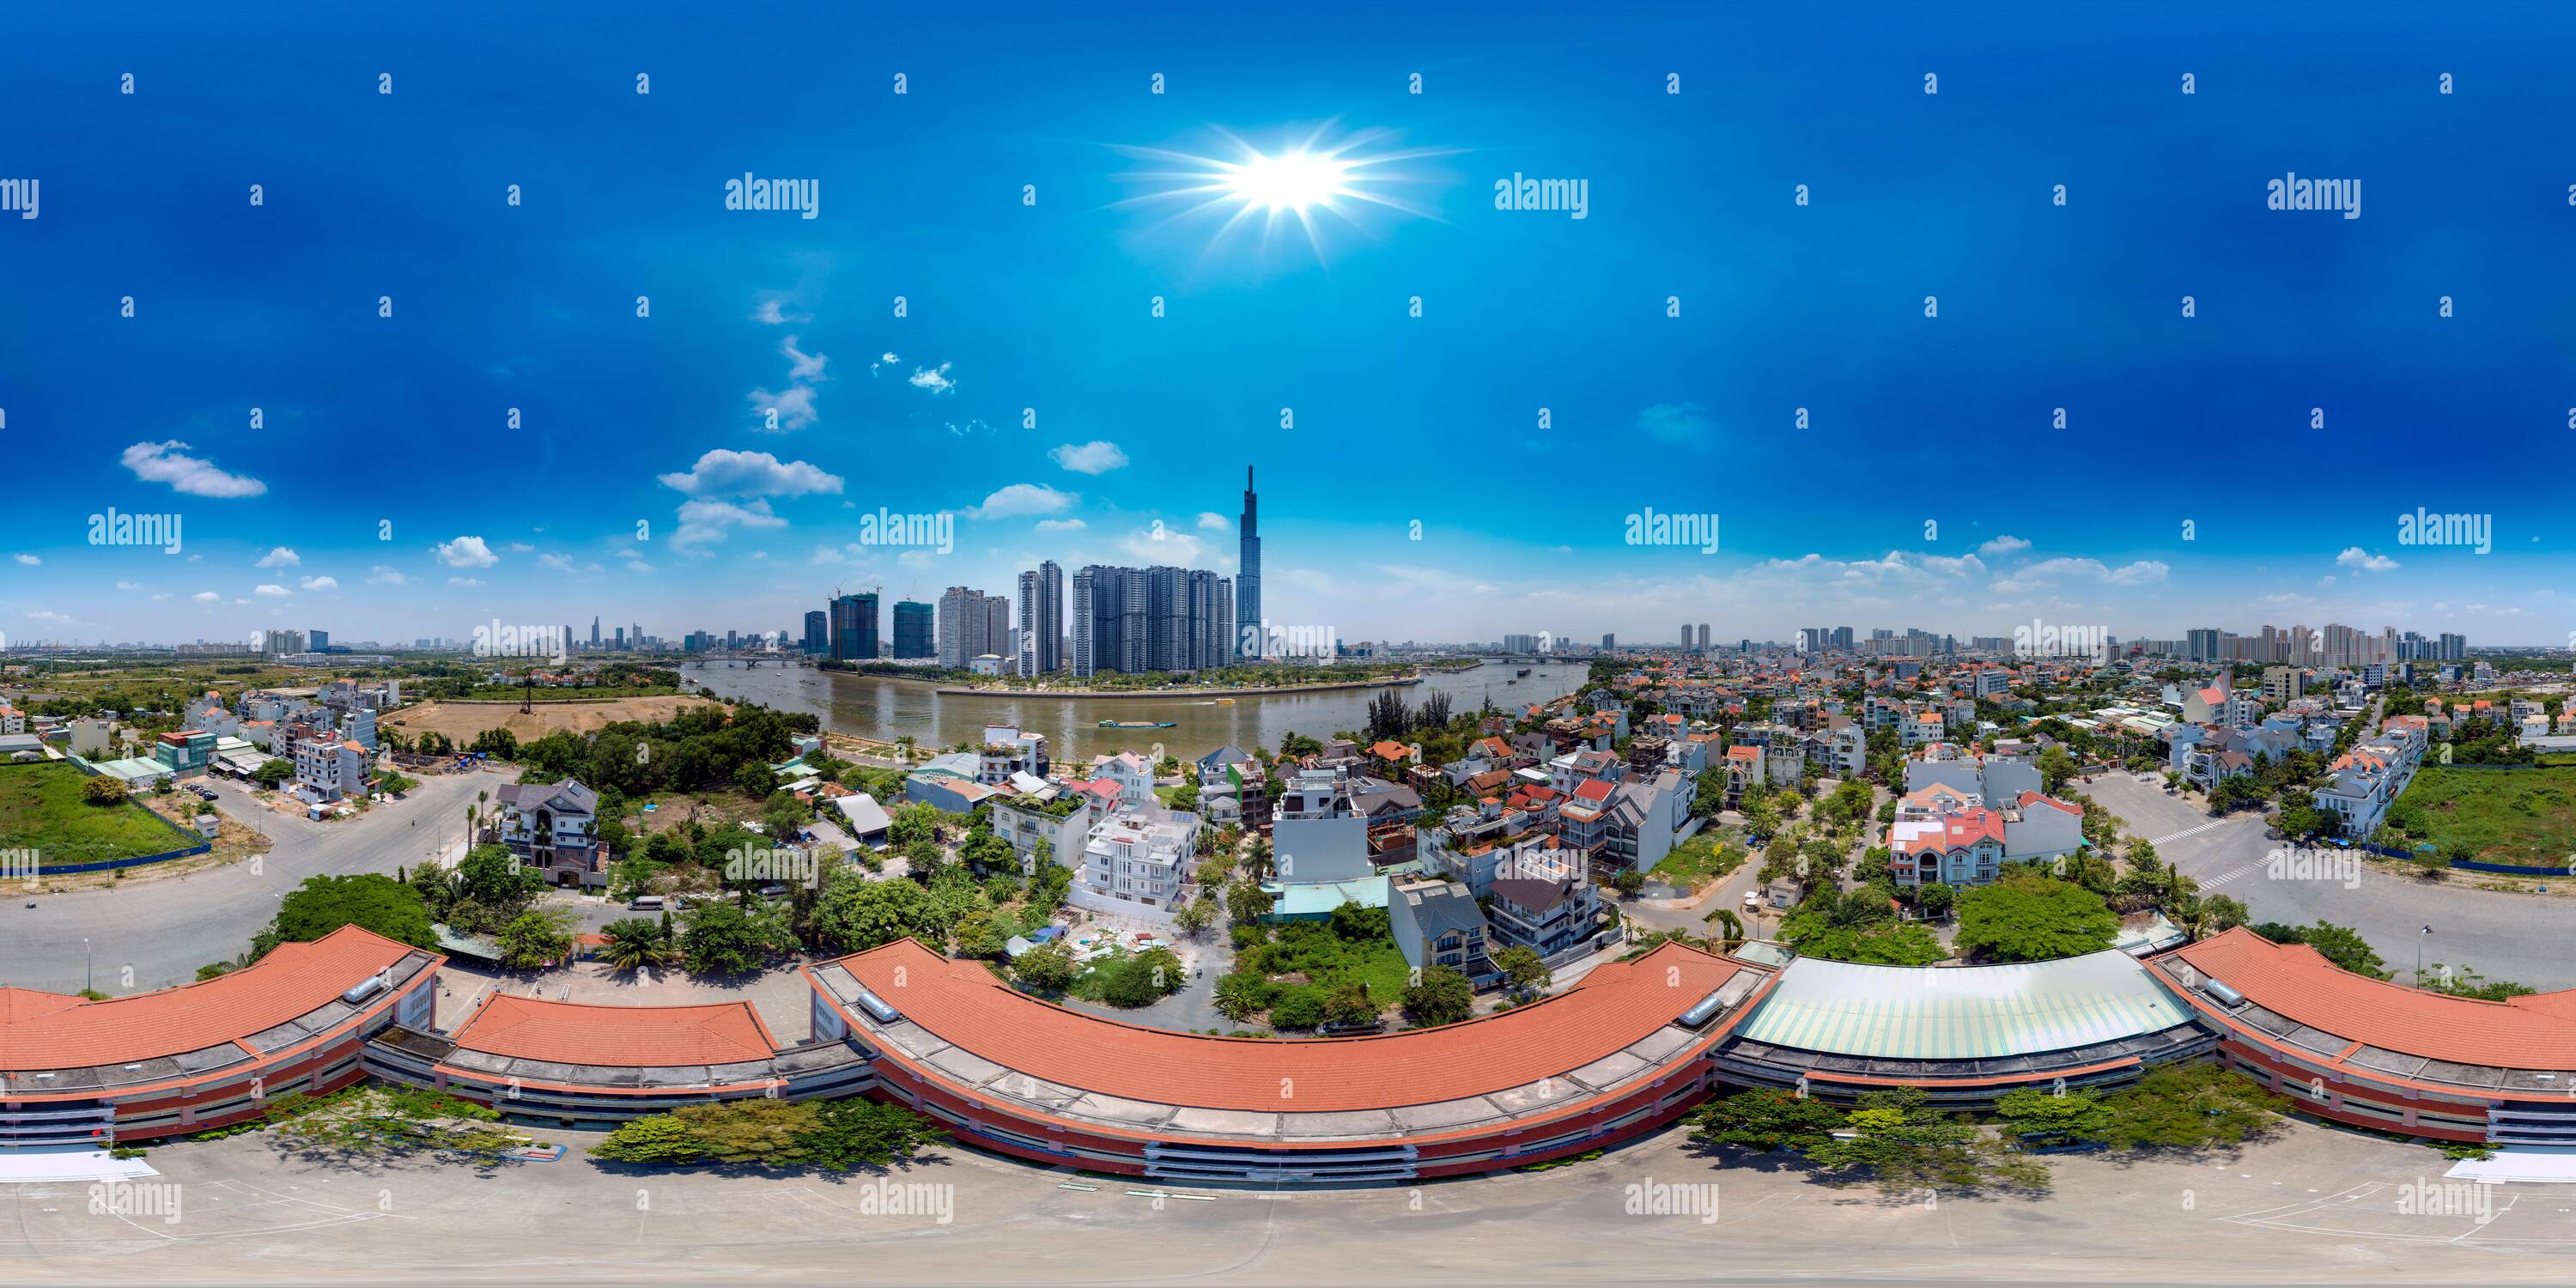 360 Grad Panorama Ansicht von 360 Panoramaaussicht über eine typische vietnamesische öffentliche Sekundarschule mit HCMC und Vinhomes im Hintergrund des Bildes.